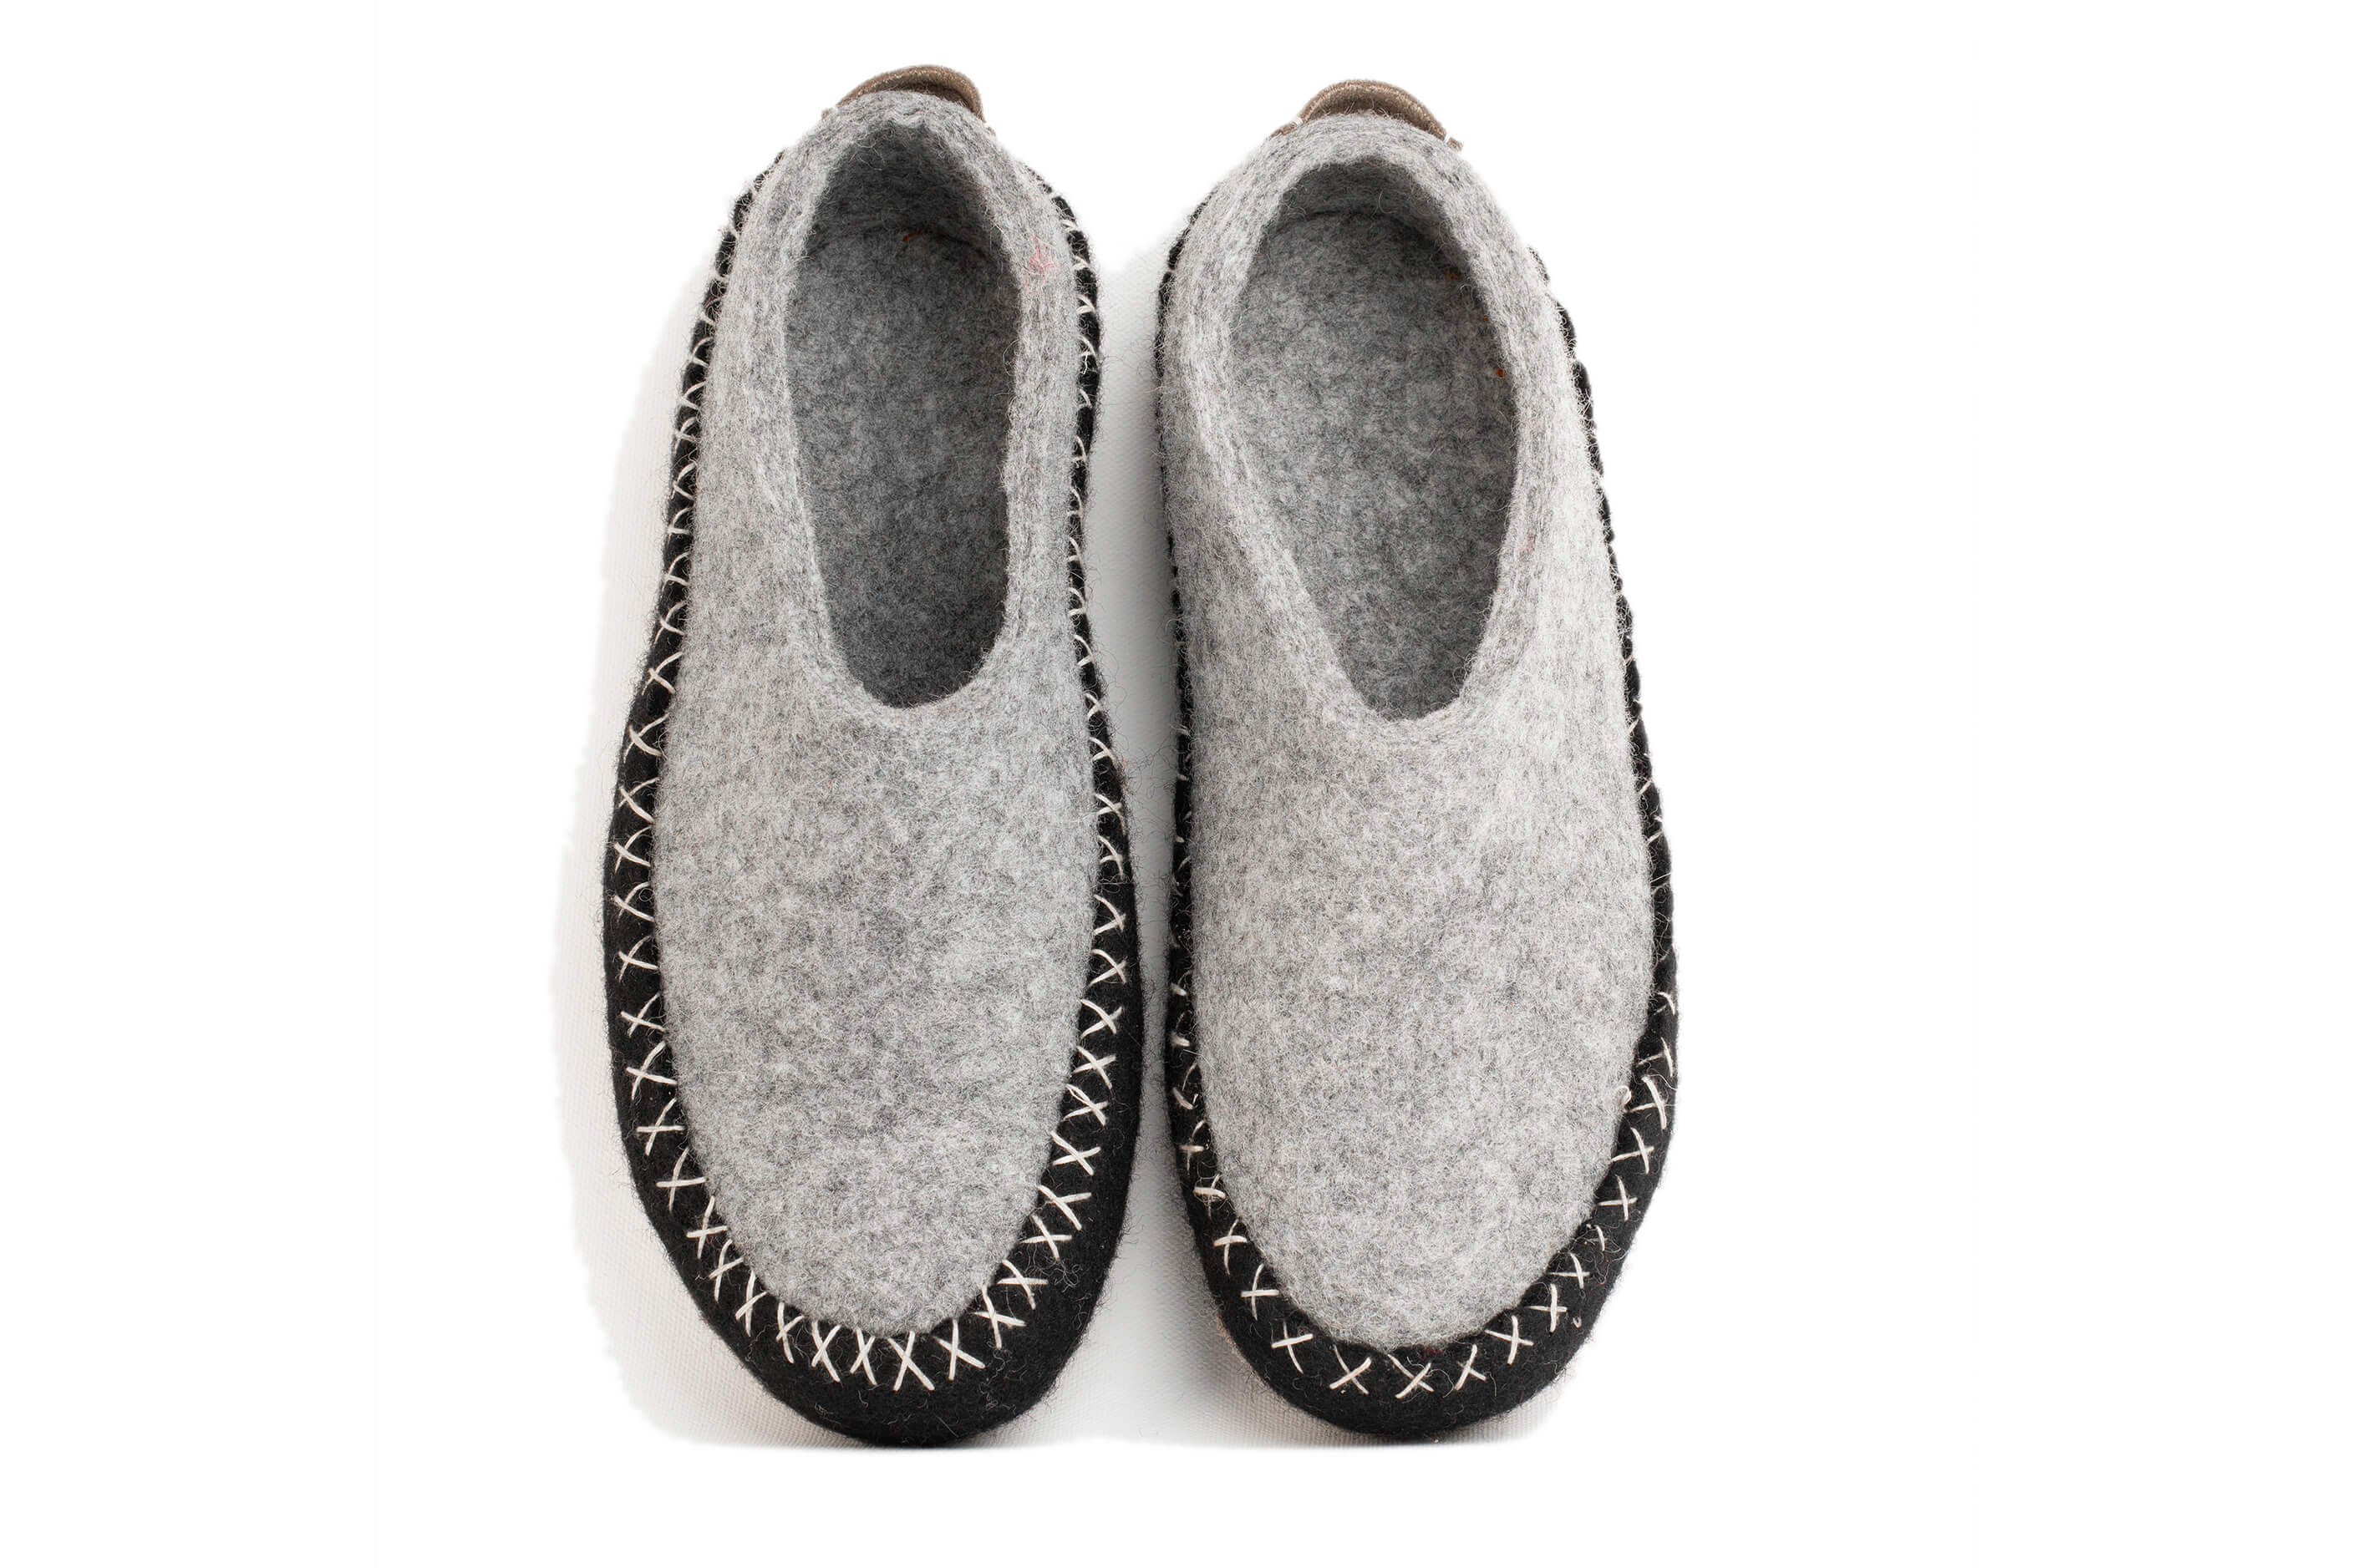 Indoor Open Heel Slipper With Leather Sole - Black & Grey